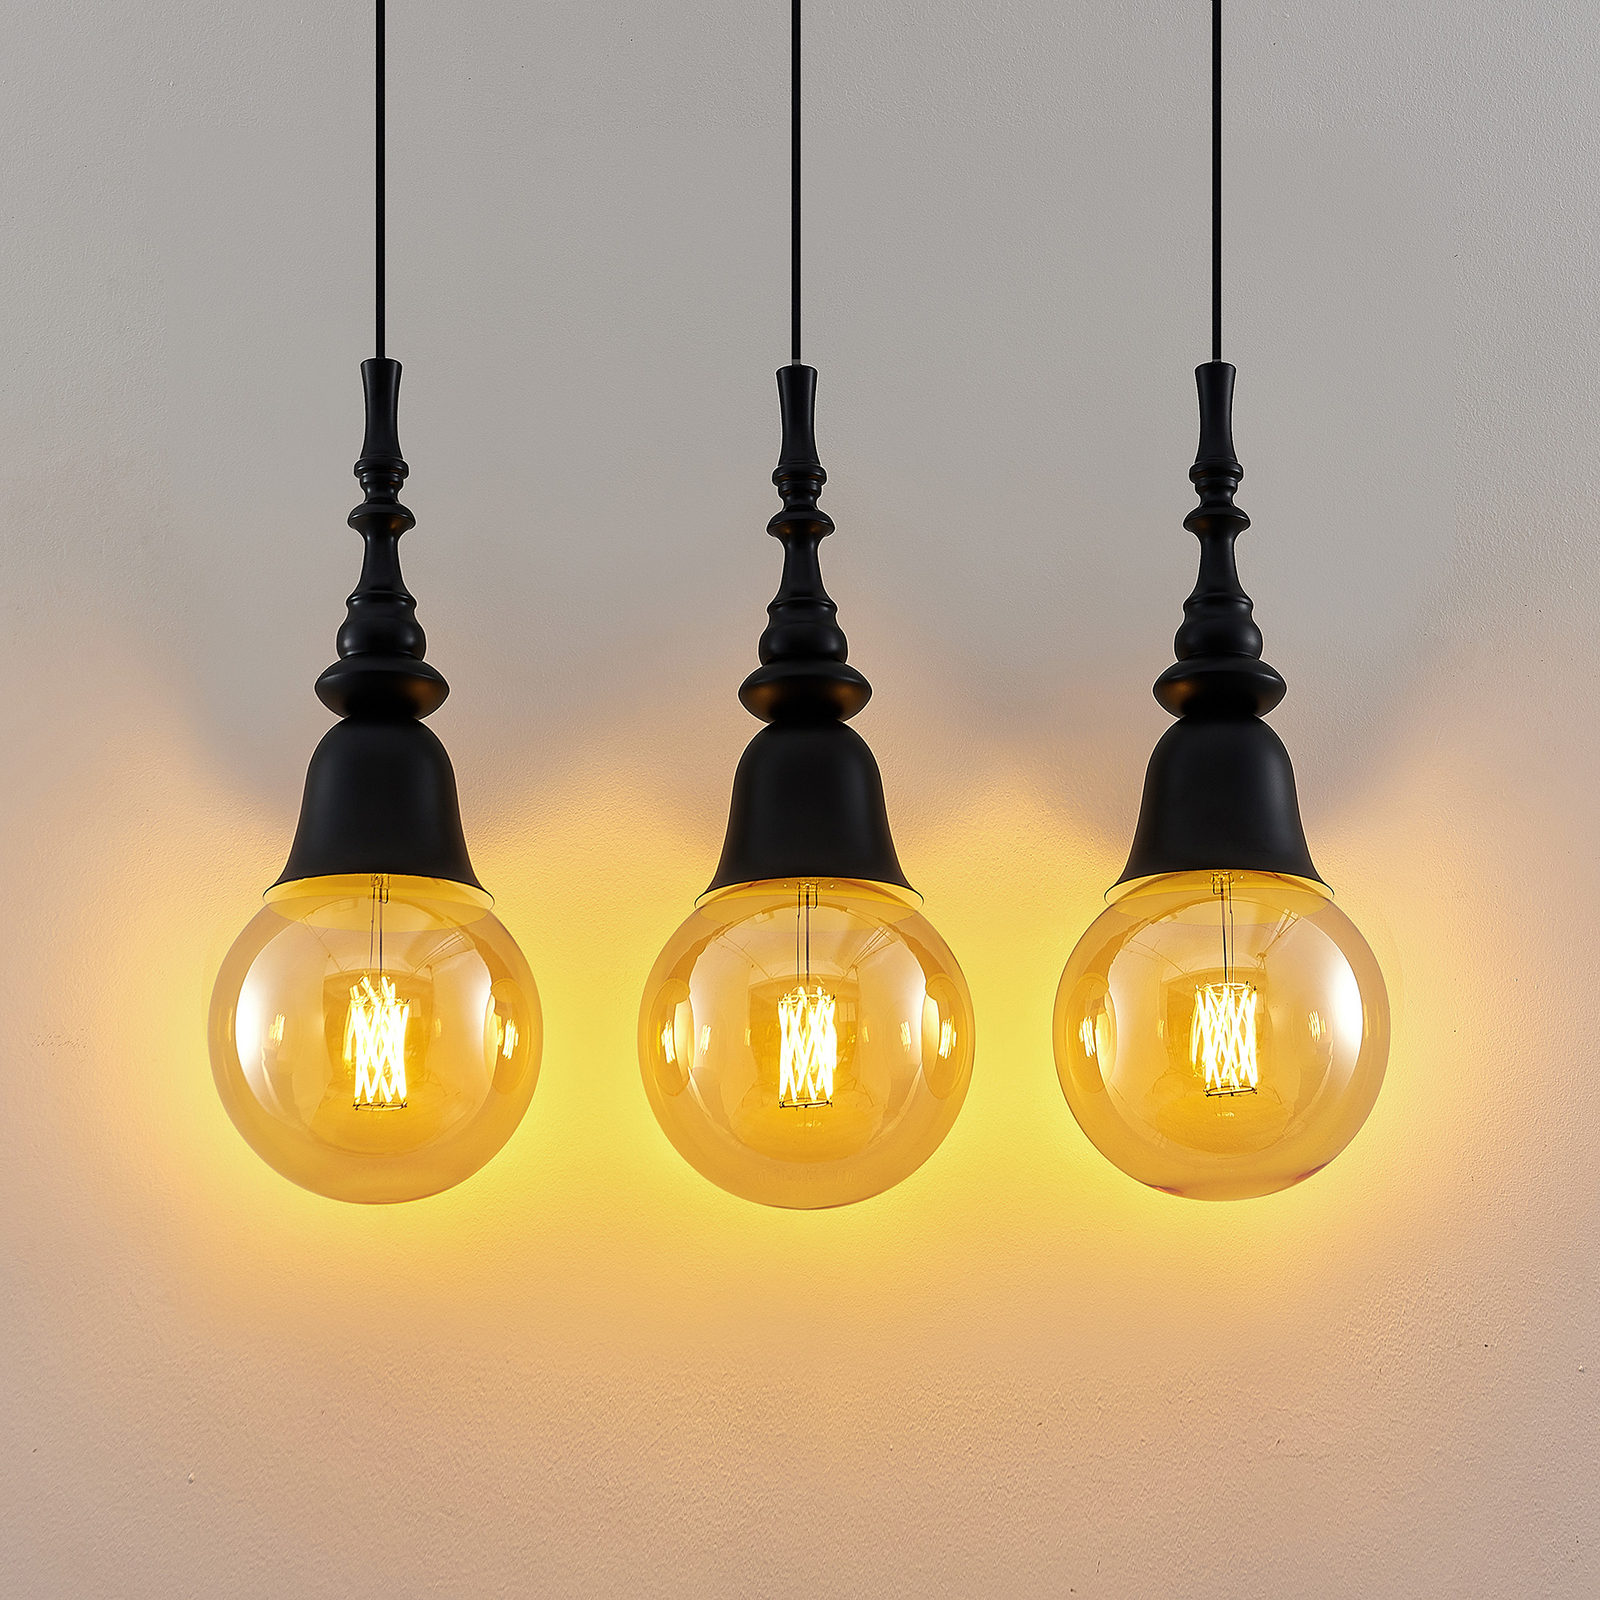 Lucande Gesja hanglamp, 3-lamps, lang, zwart